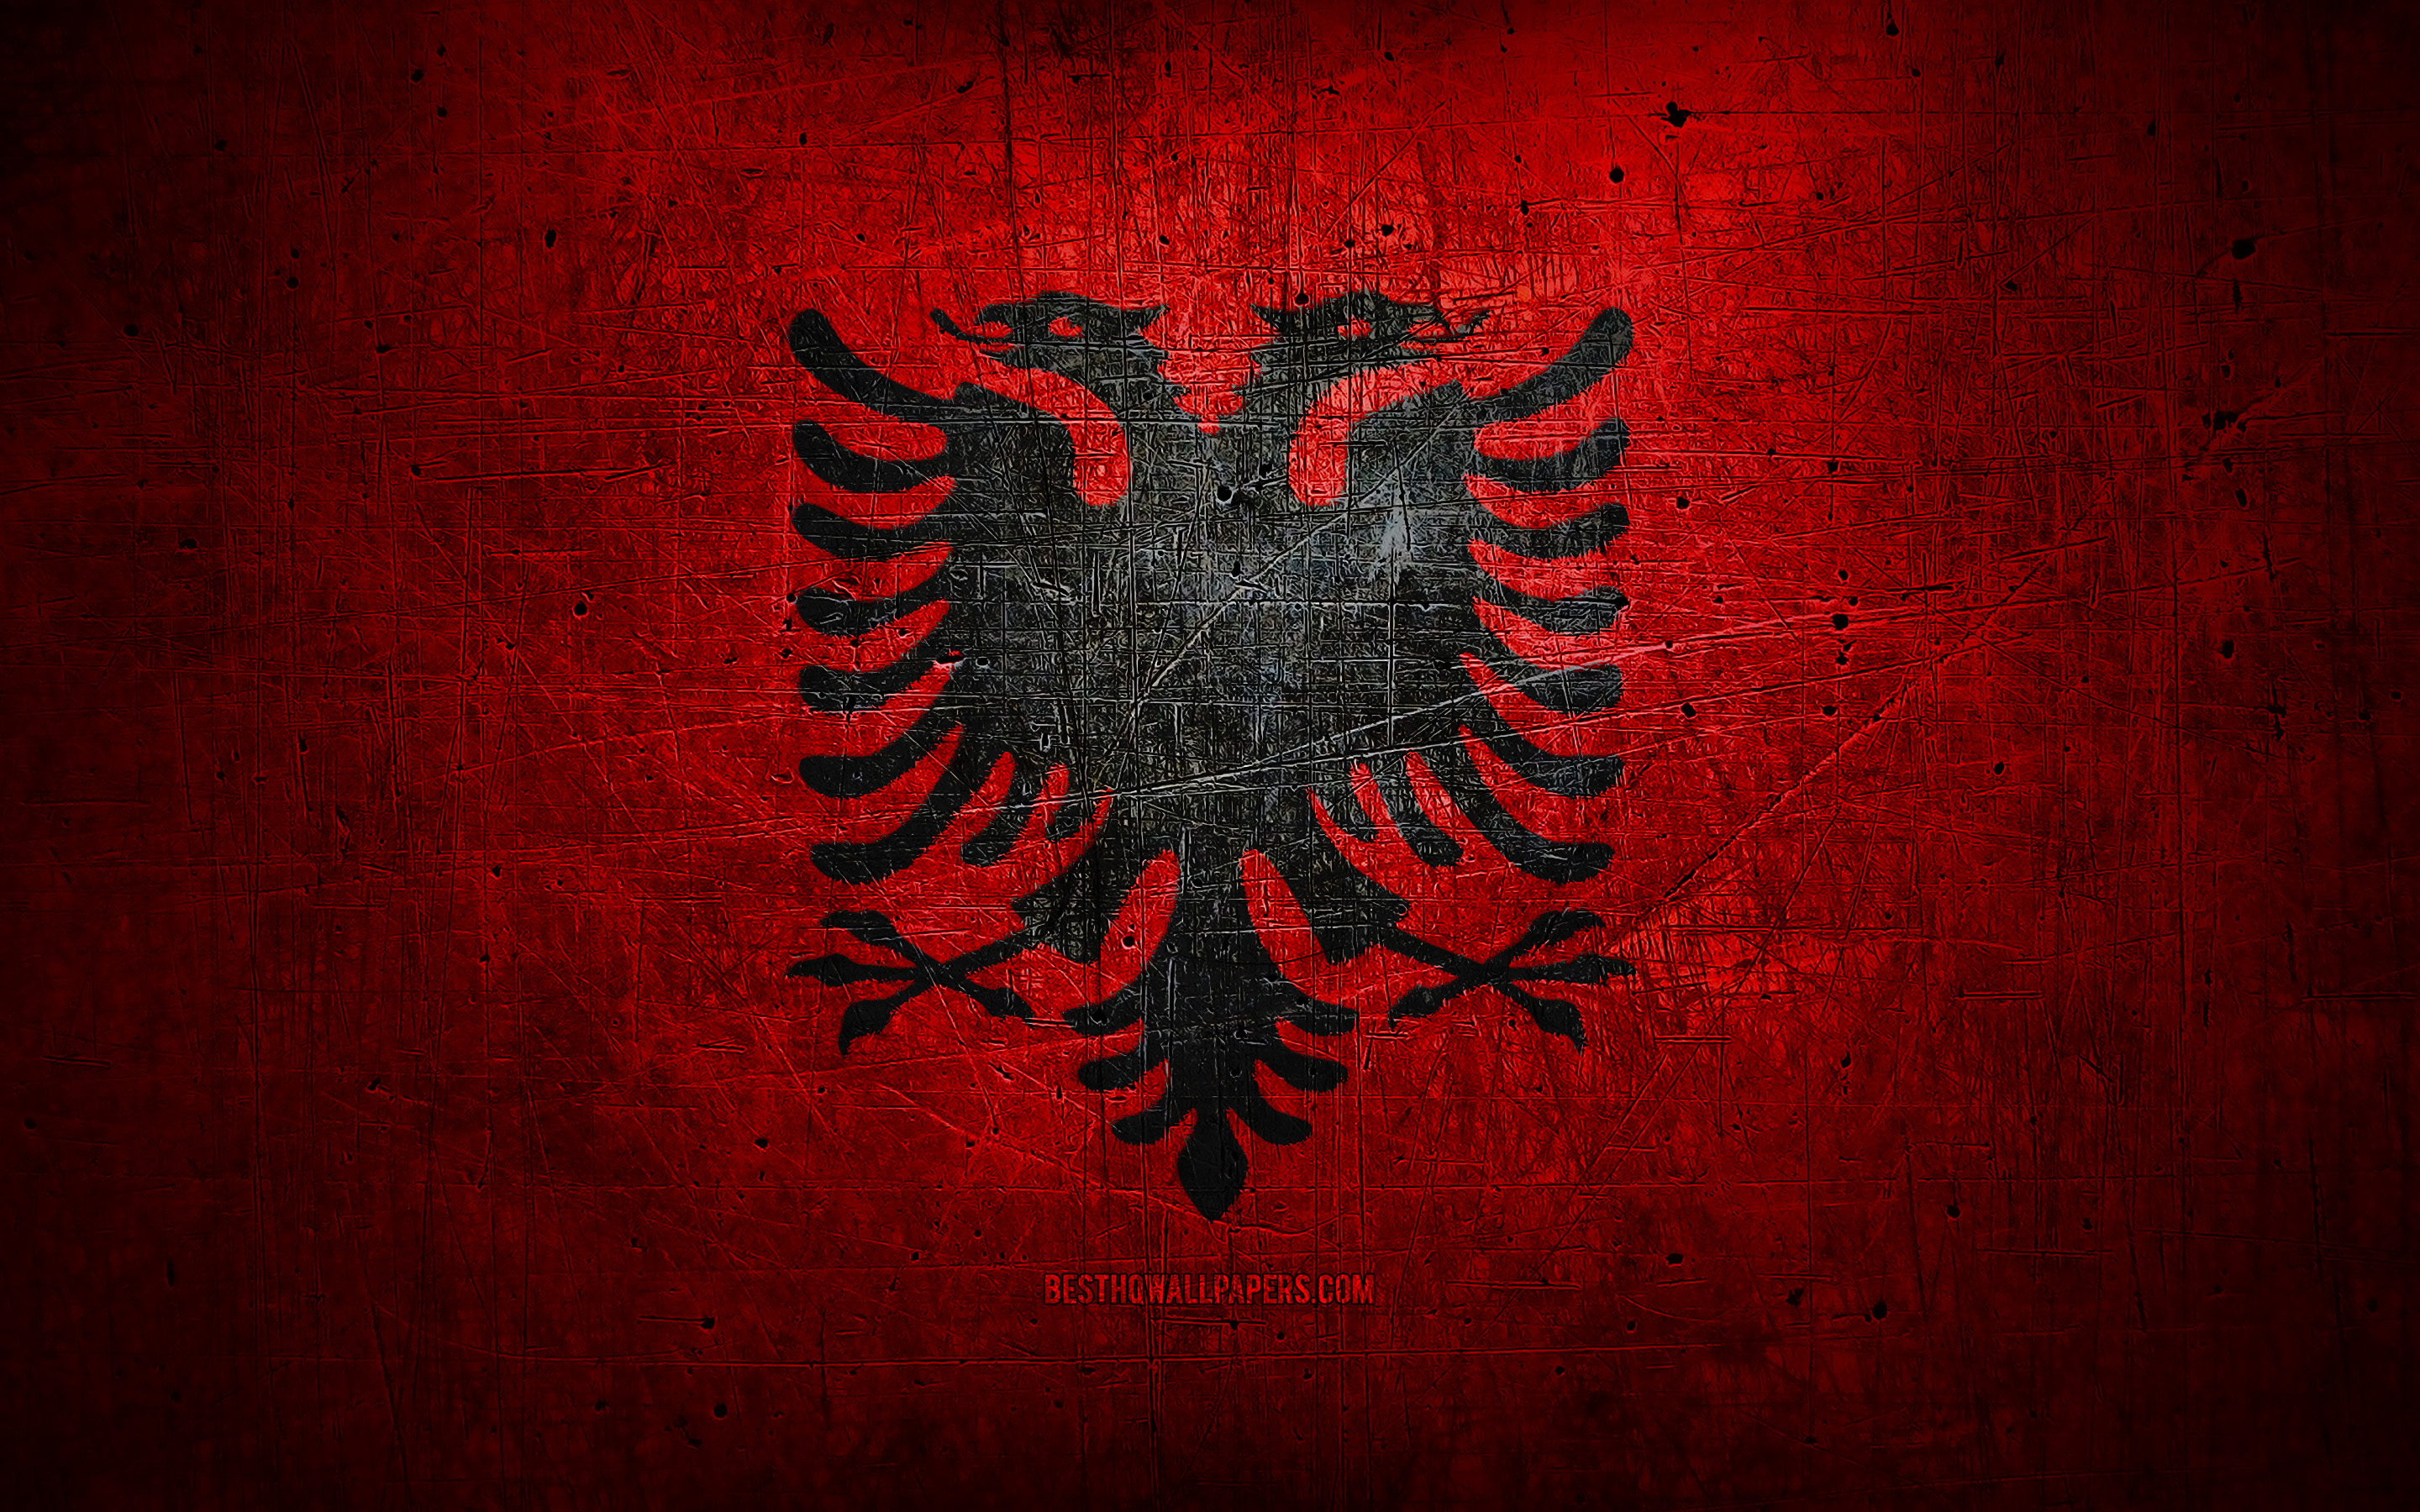 Albanian Flag Wallpapers